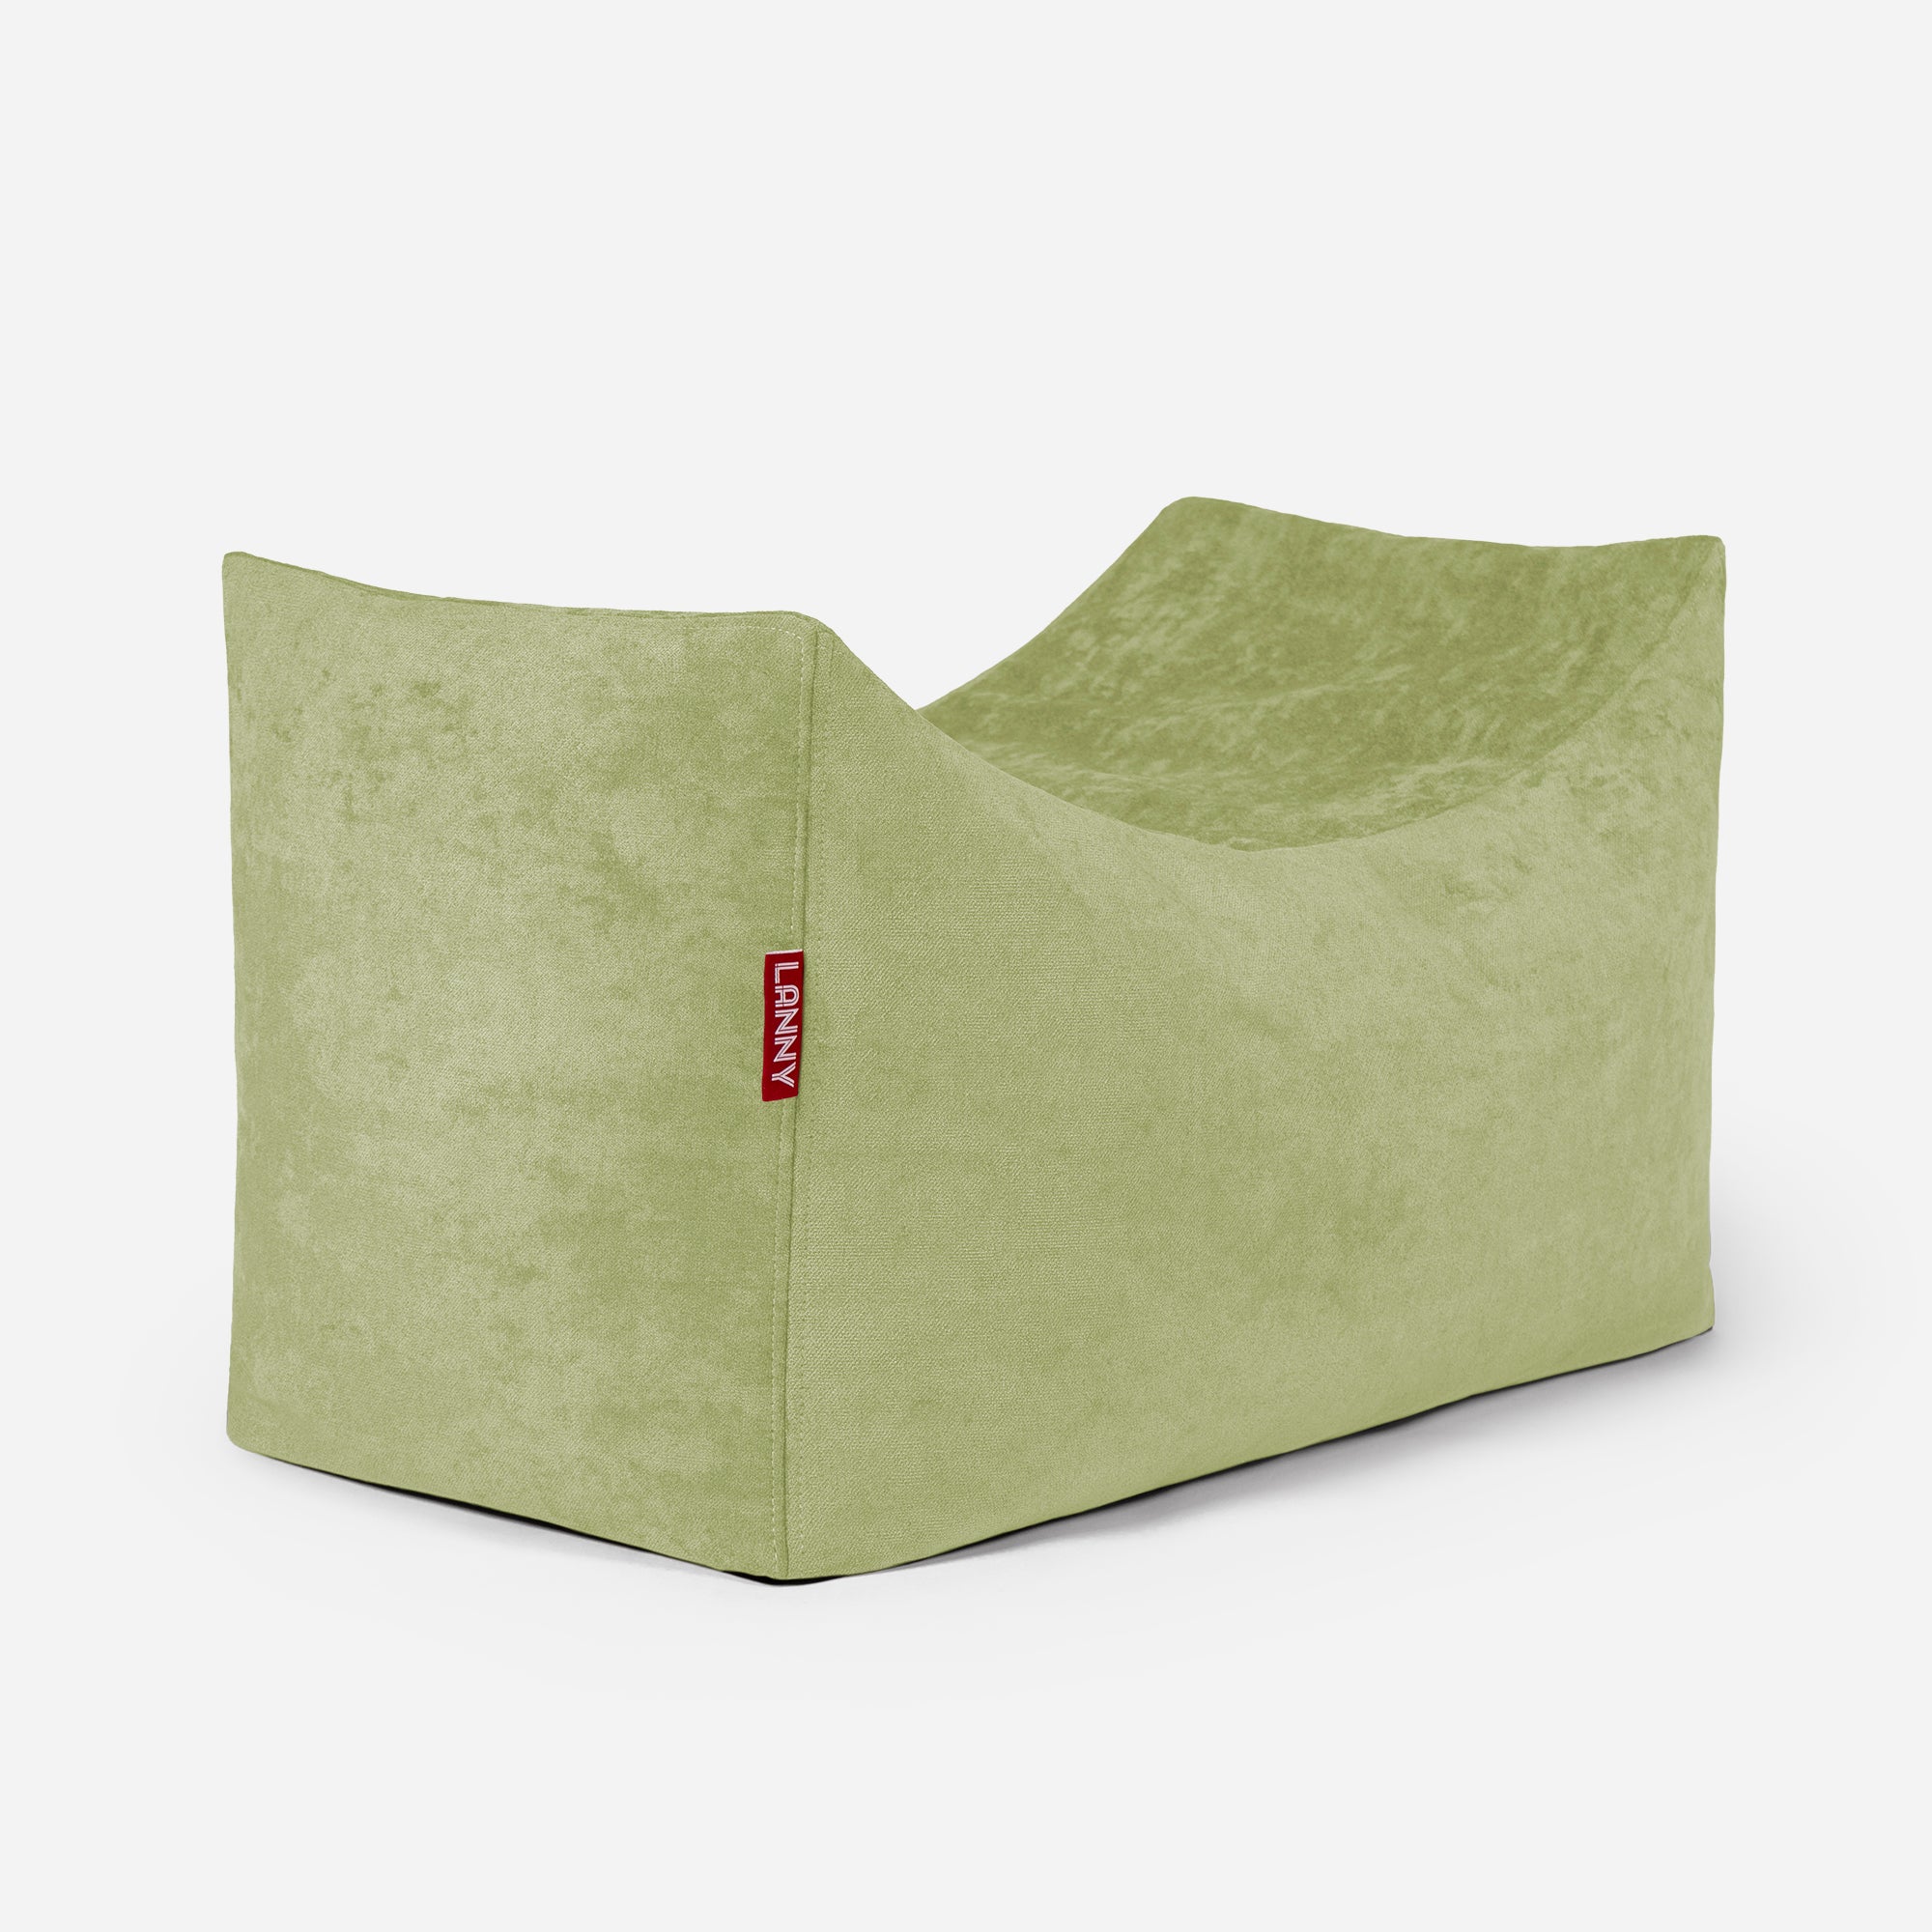 Quadro Aldo Lime Bean bag Chair